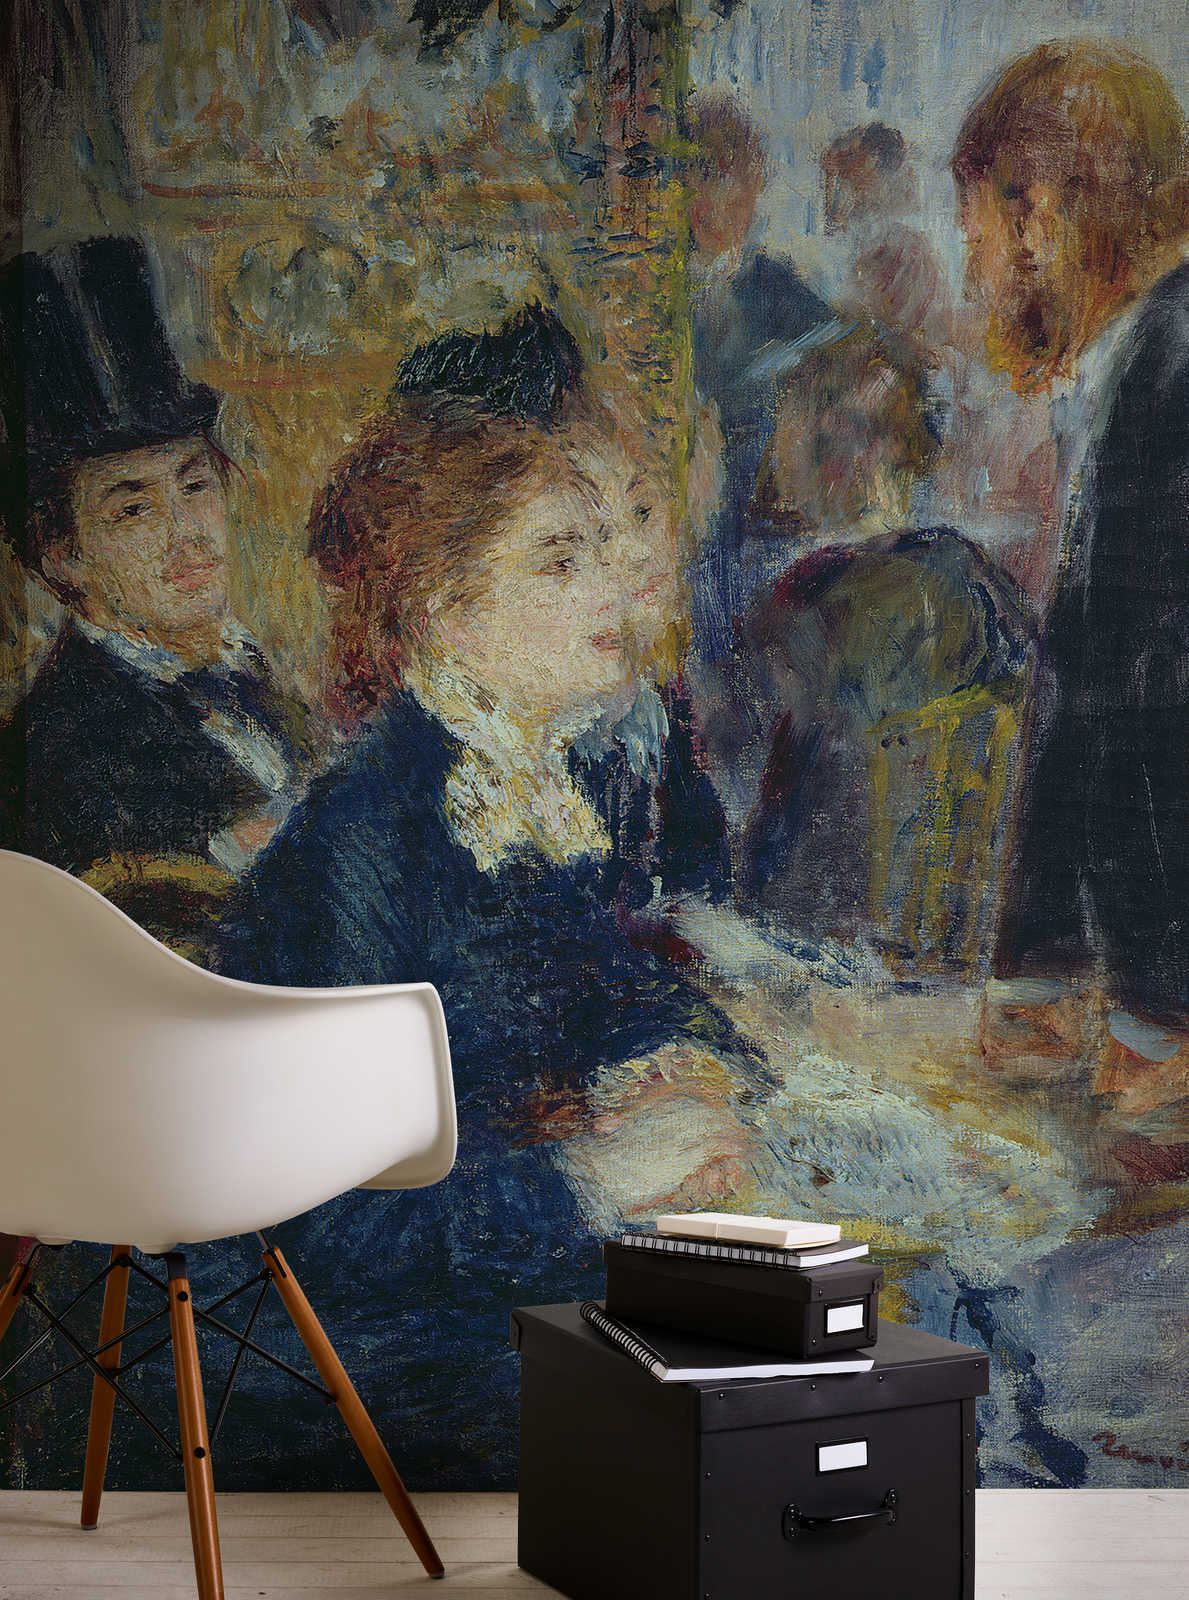             Carta da parati fotografica "Nella casa del caffè" di Pierre Auguste Renoir
        